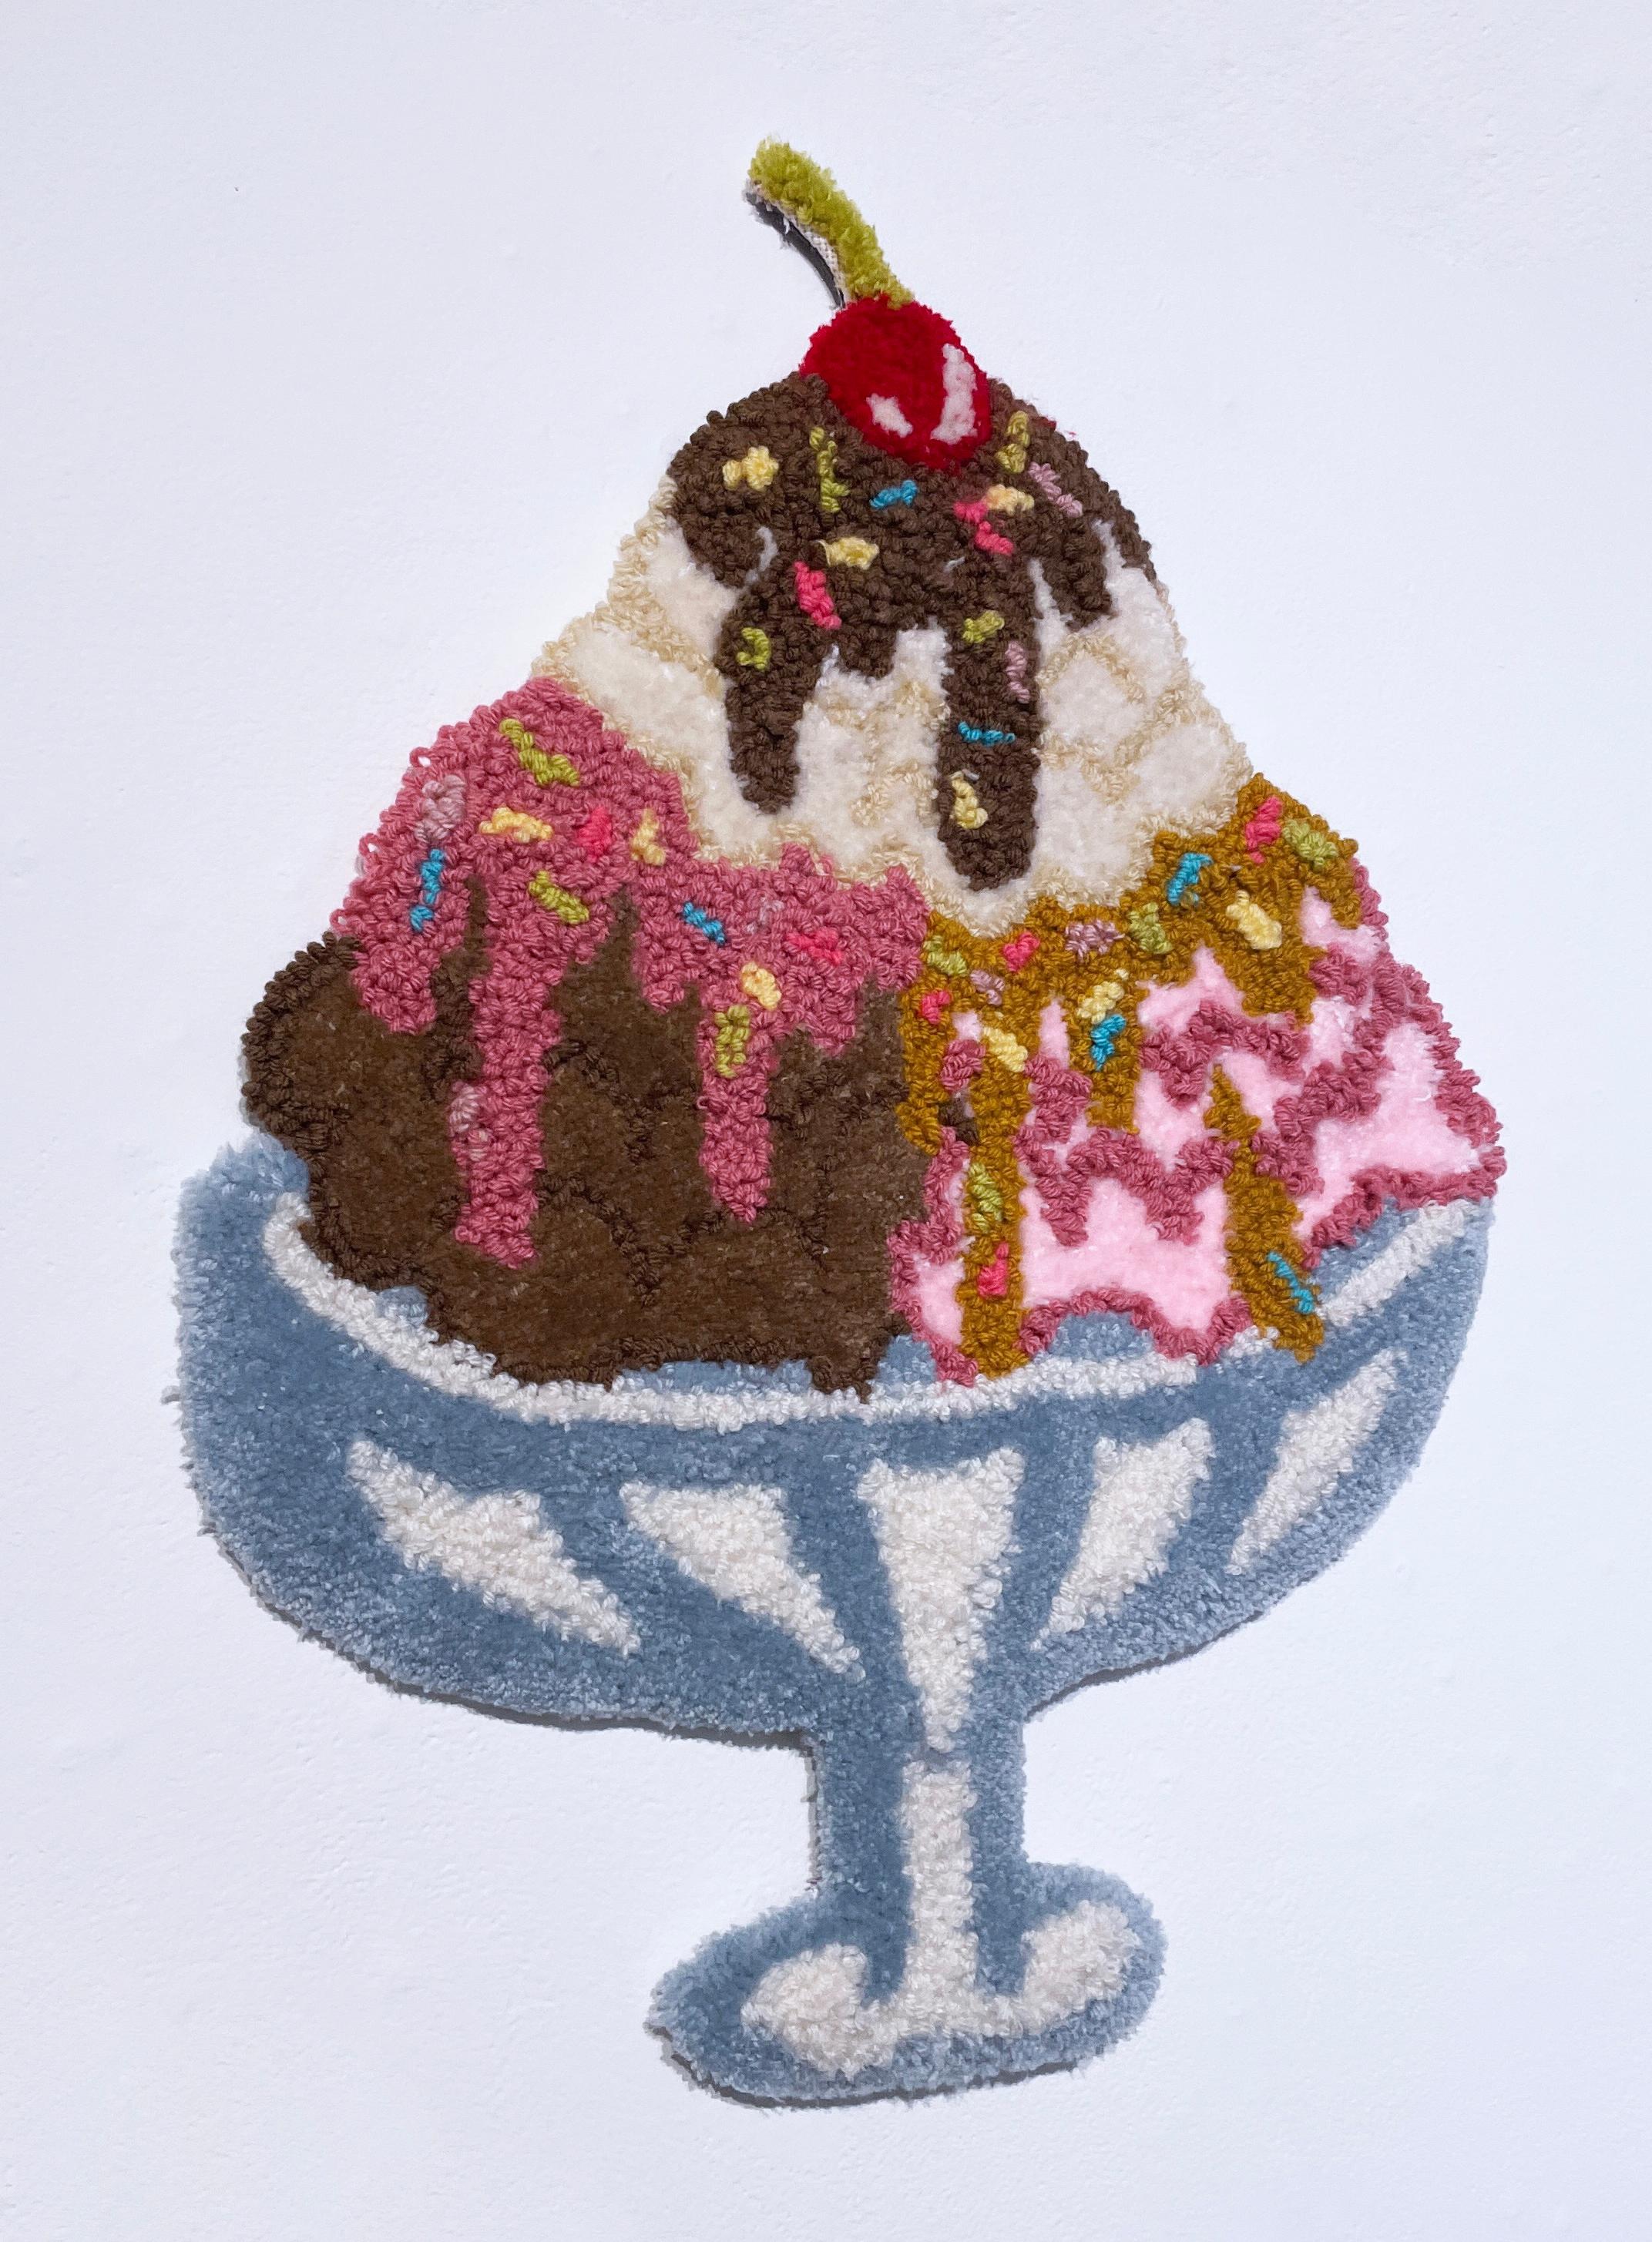 Publicité : Crème glacée (20232), art mural touffeté, textile, fibre, fil, rose - Sculpture de SarahGrace